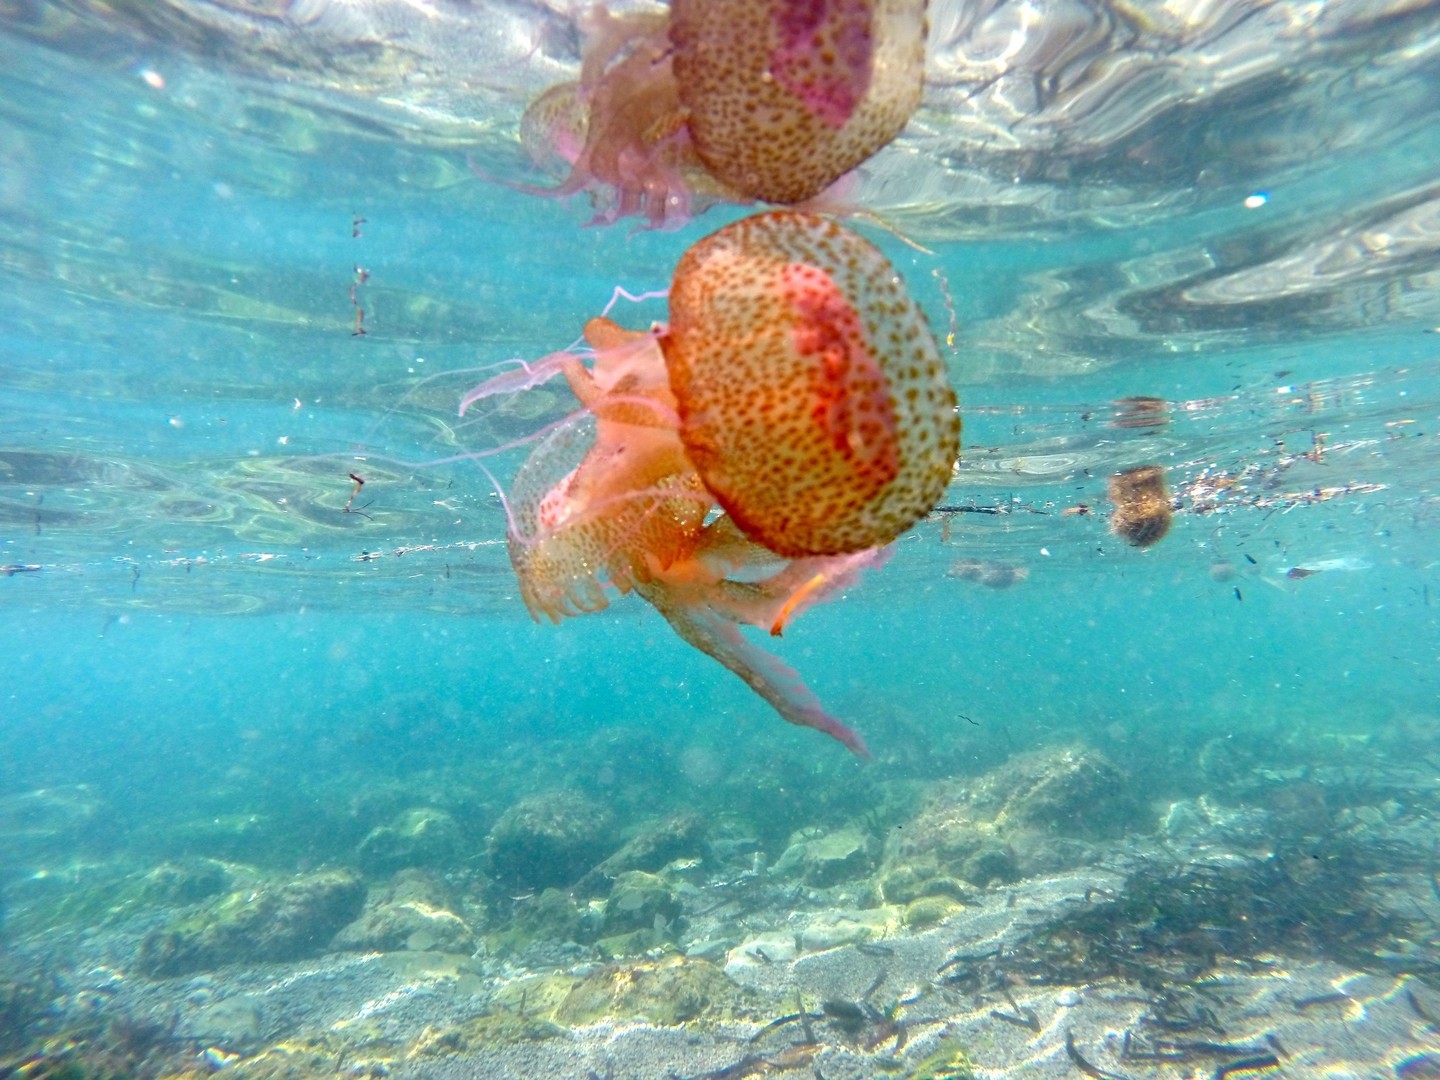 S-a deschis sezonul la … meduze